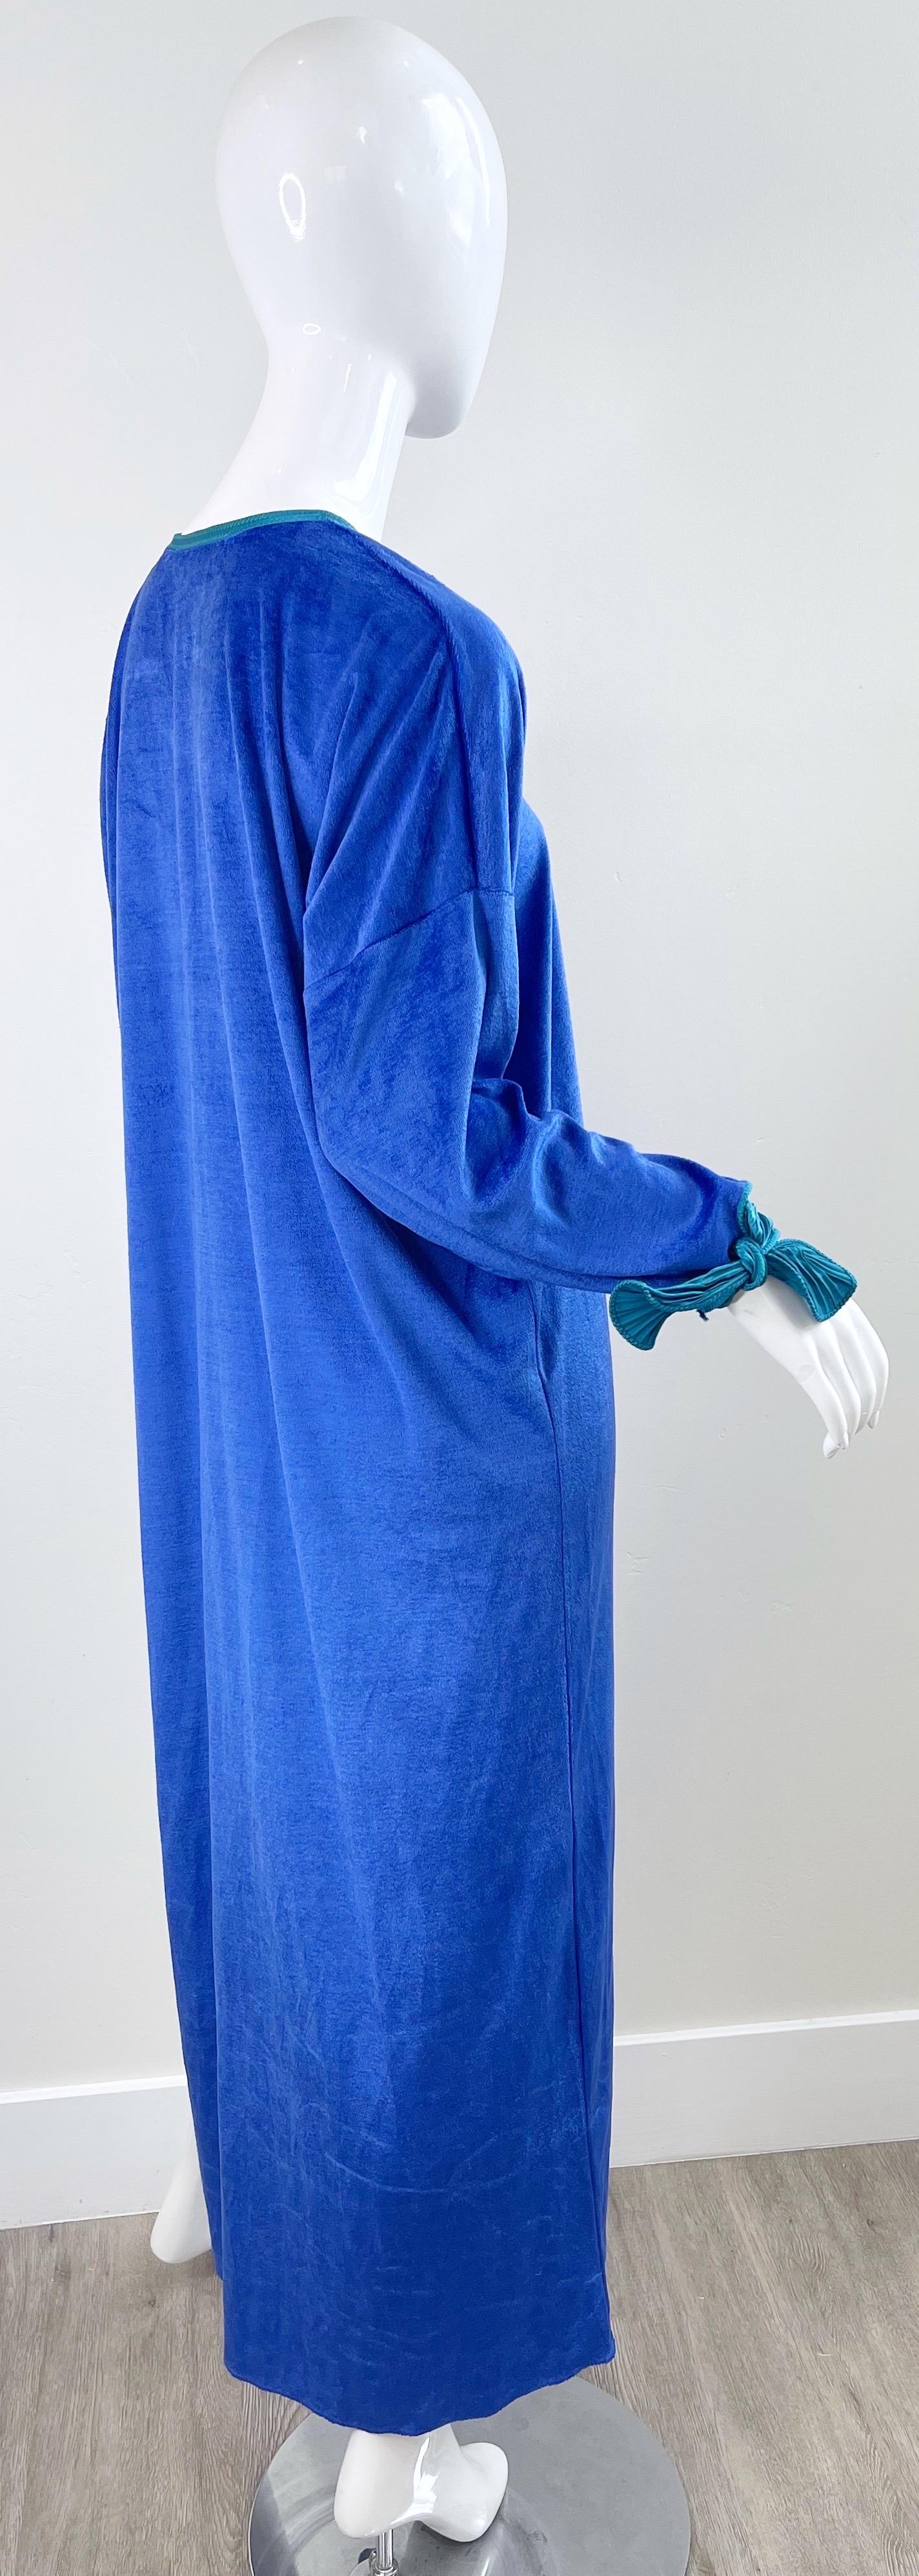 1980s Mary McFadden Royal Blue Teal Velour Vintage 80s Caftan Maxi Dress Kaftan For Sale 11